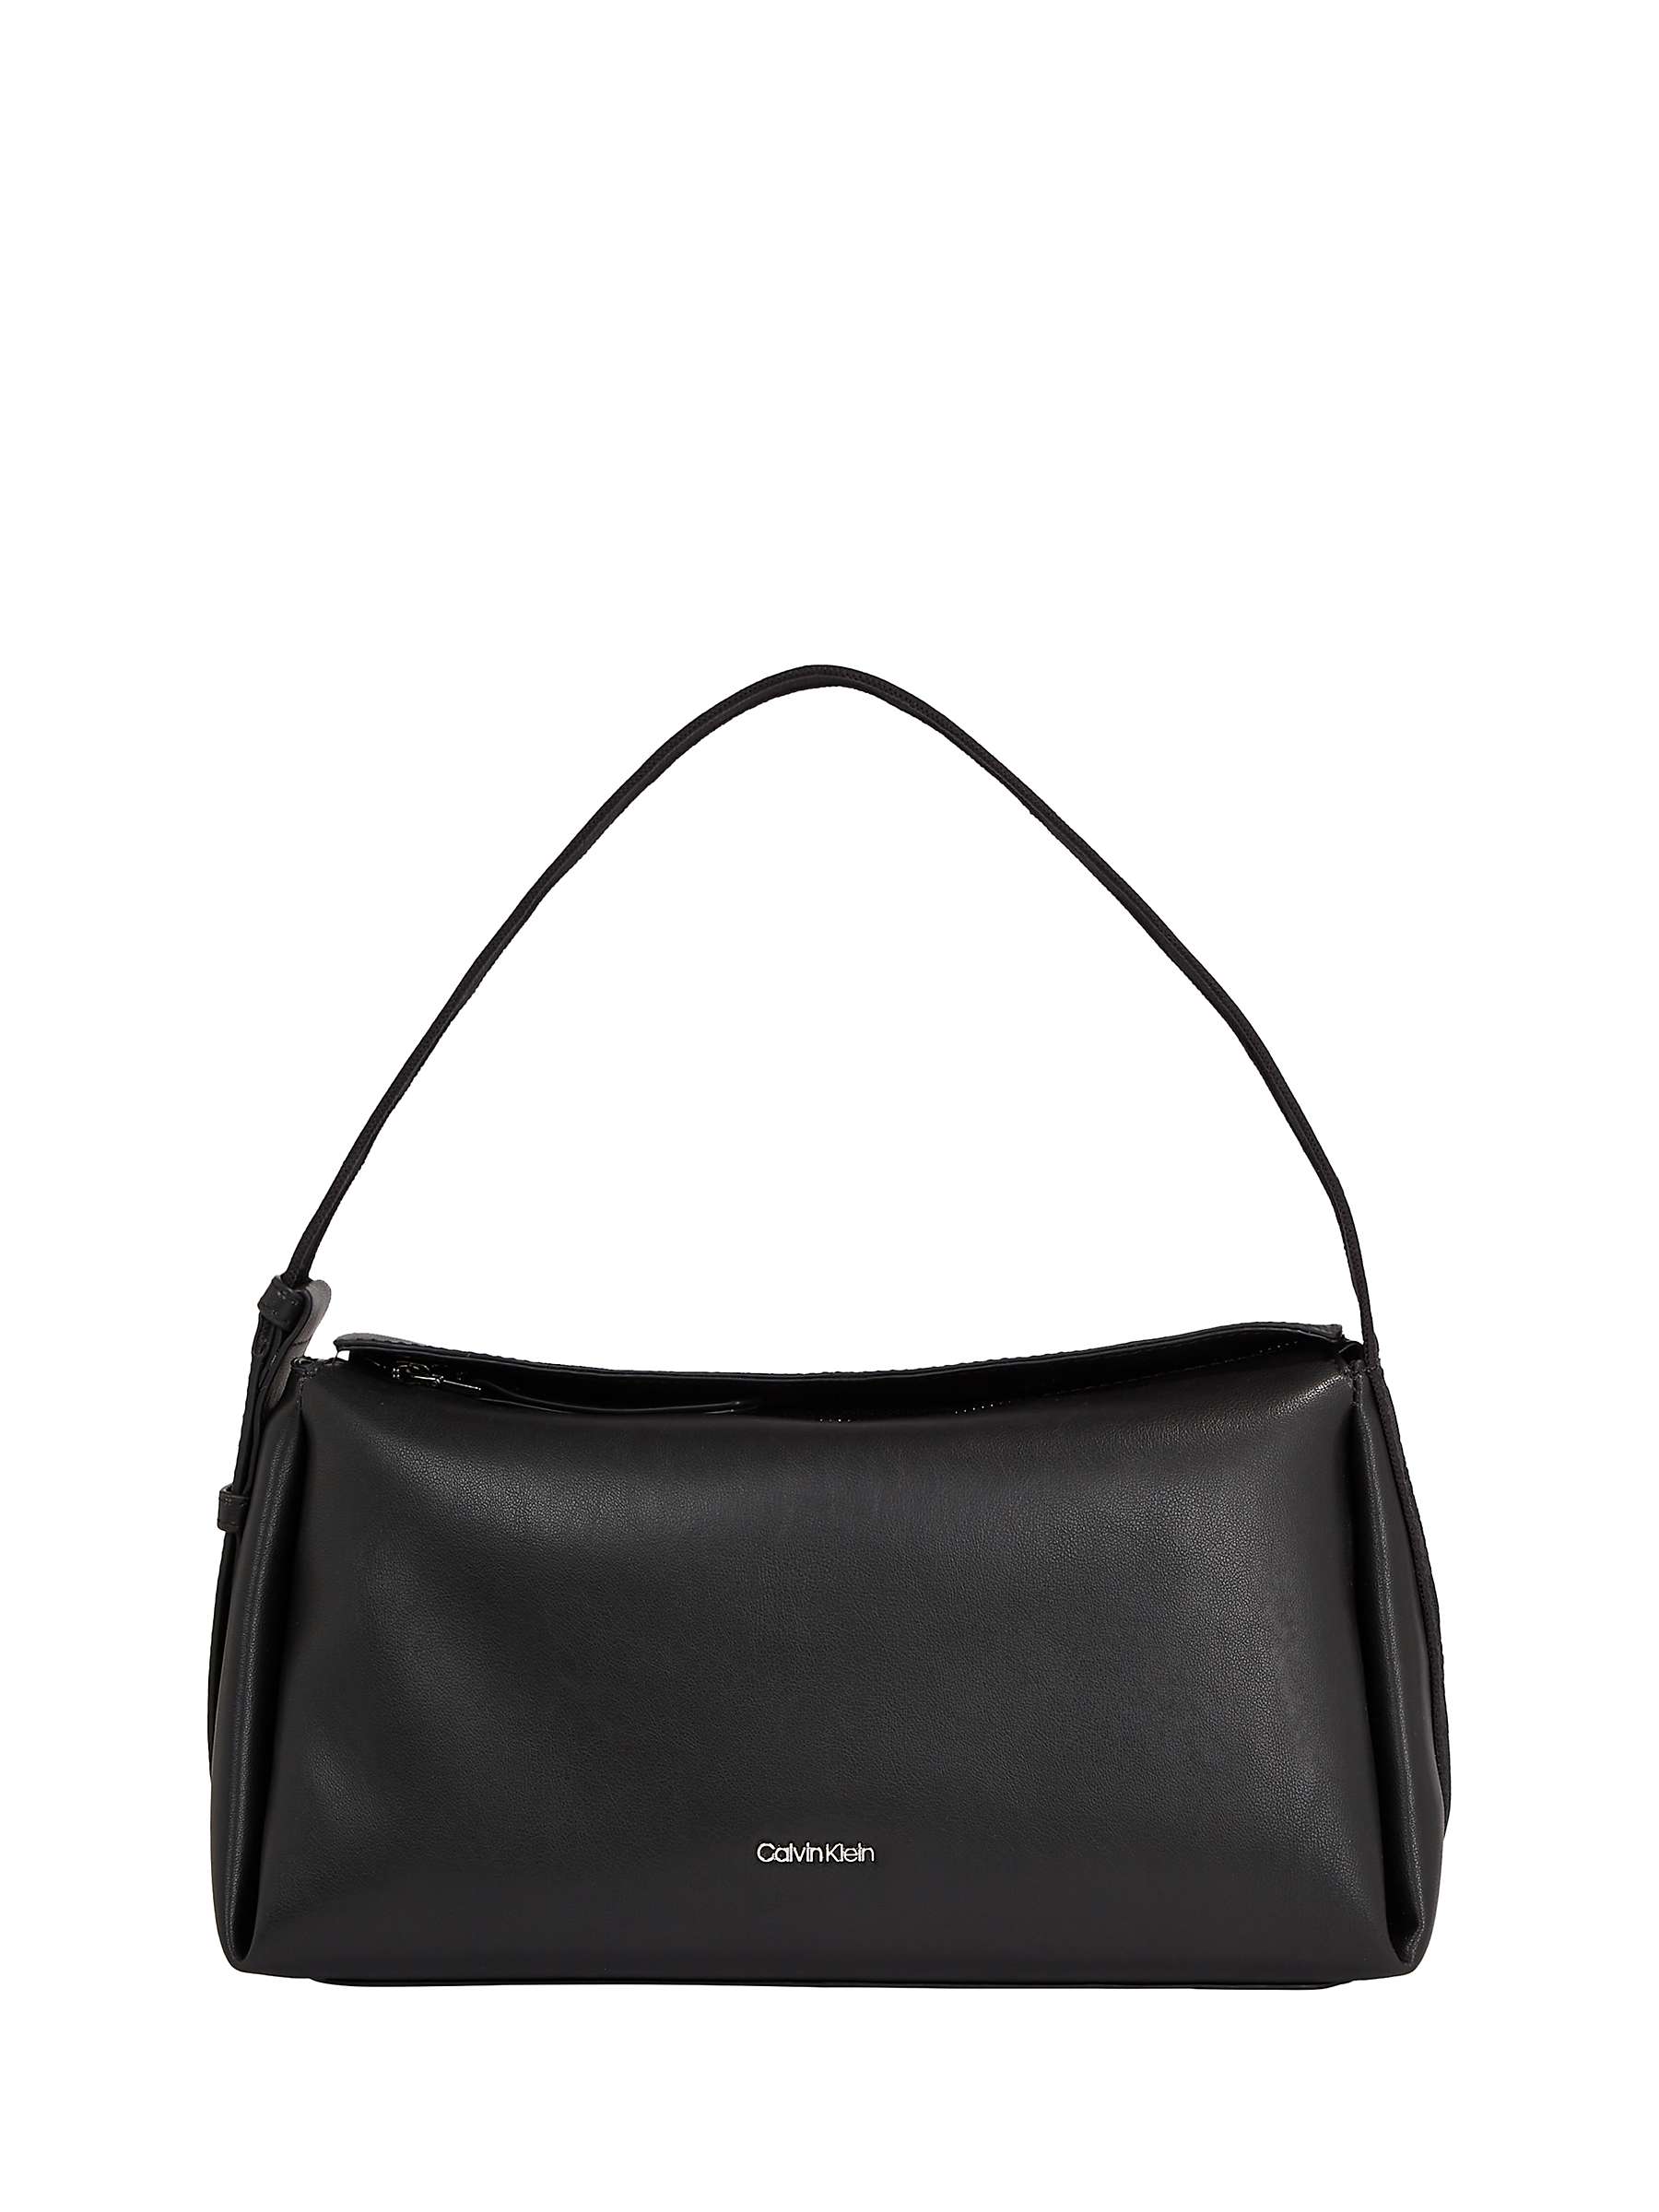 Buy Calvin Klein Shoulder Bag, Black Online at johnlewis.com